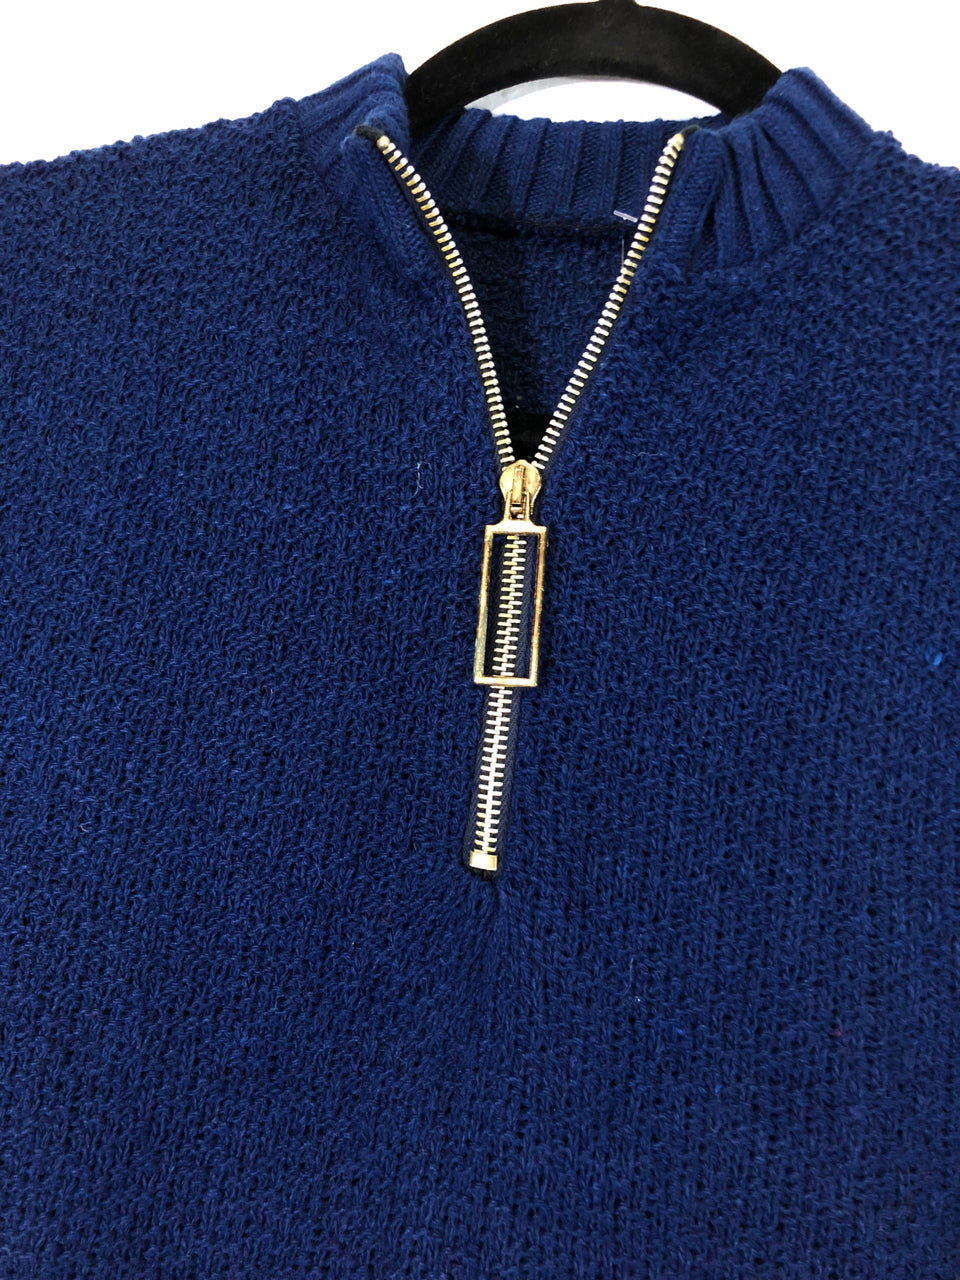 70s Short-Sleeved Navy Zip Sweater